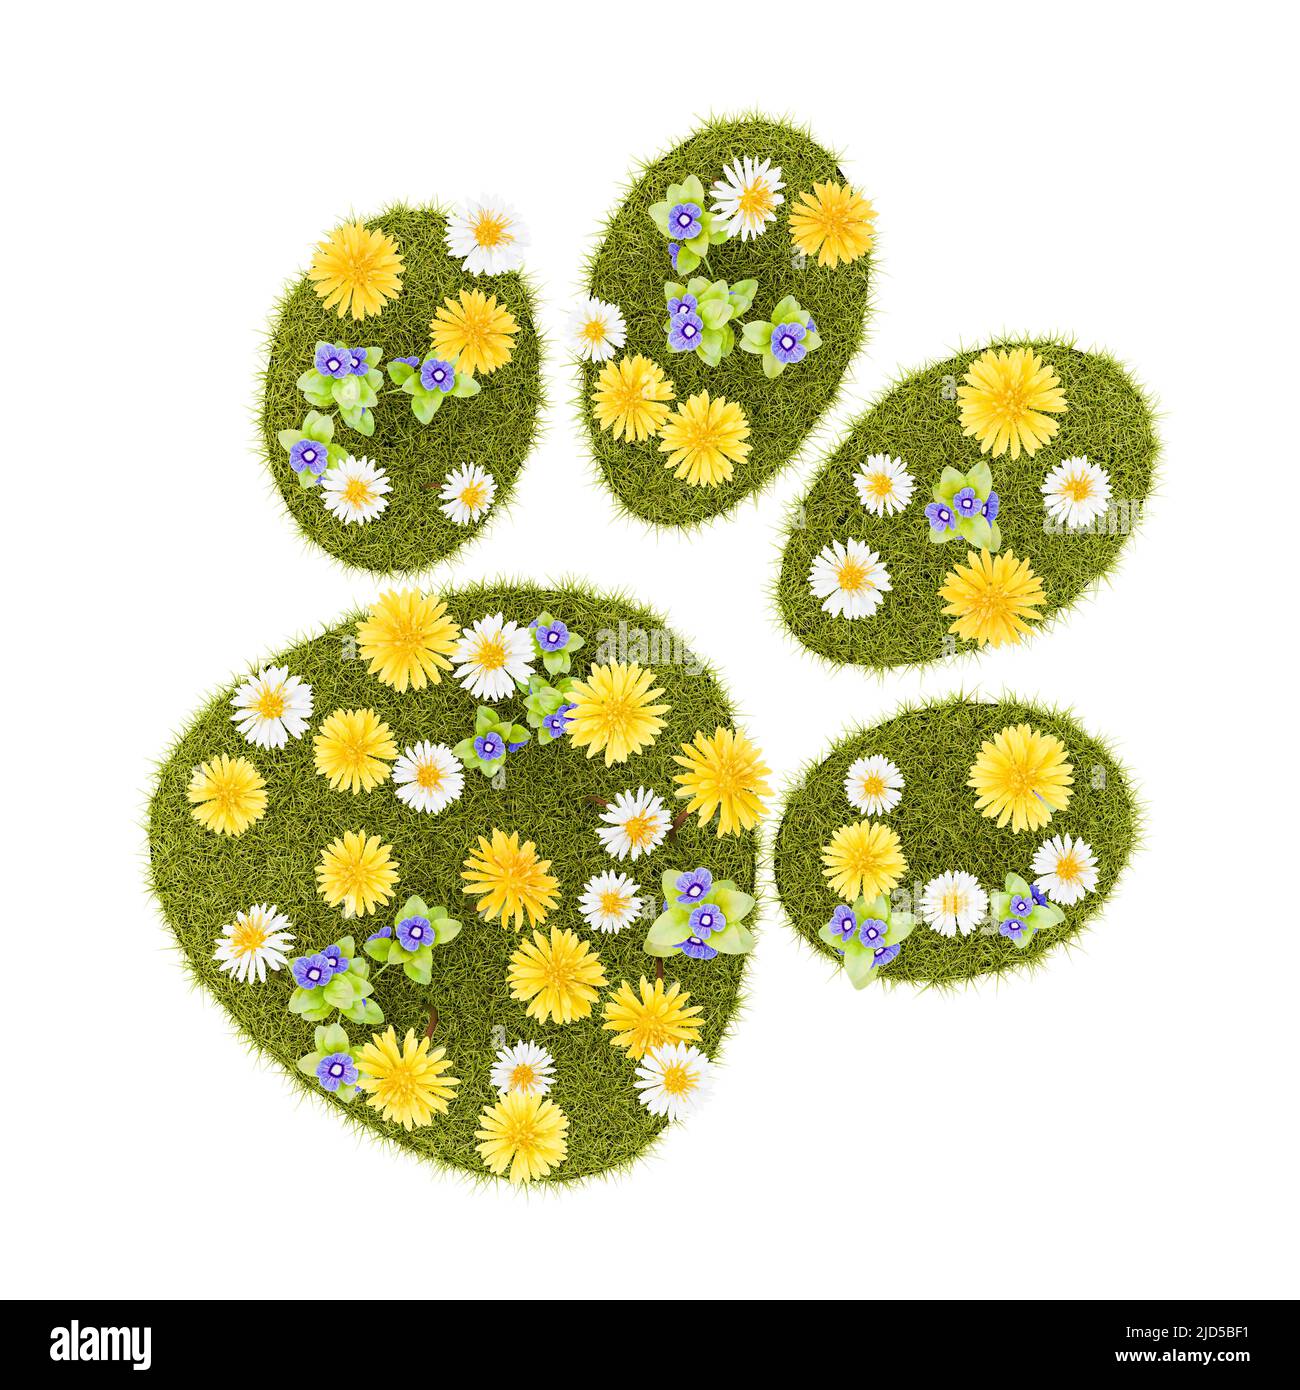 Símbolo de estampado de mascotas de flores de grassy forma aislada Foto de stock